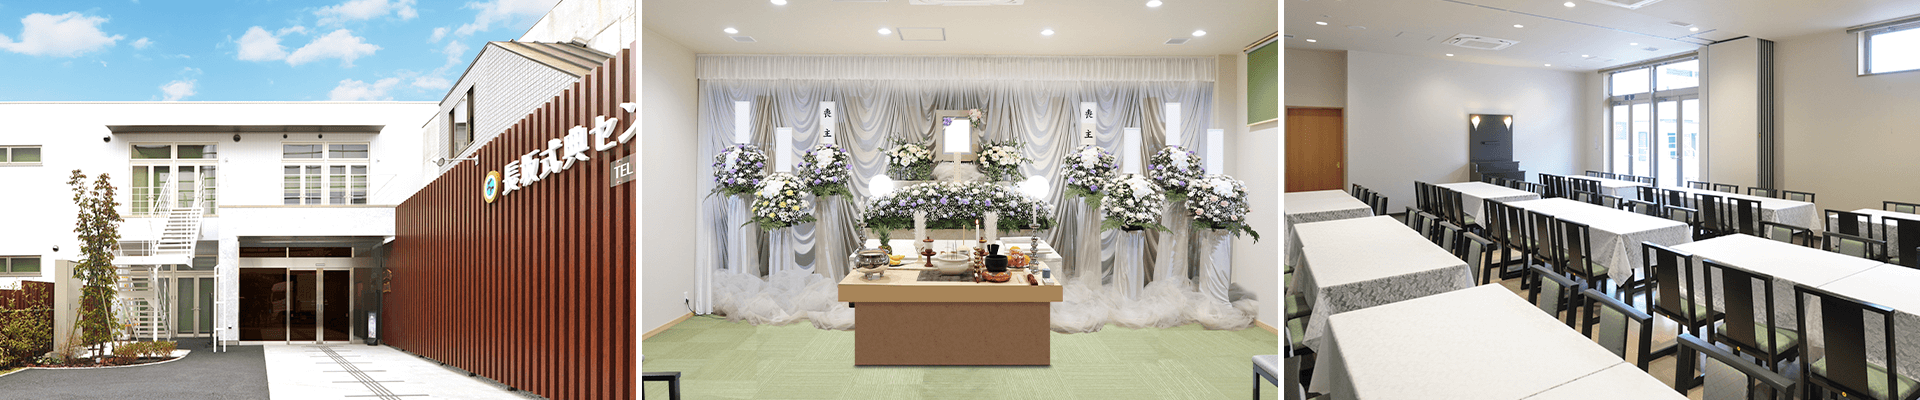 葬儀・葬式・家族葬なら16.5万円からできる長坂式典センター 武蔵村山市の葬儀場一覧